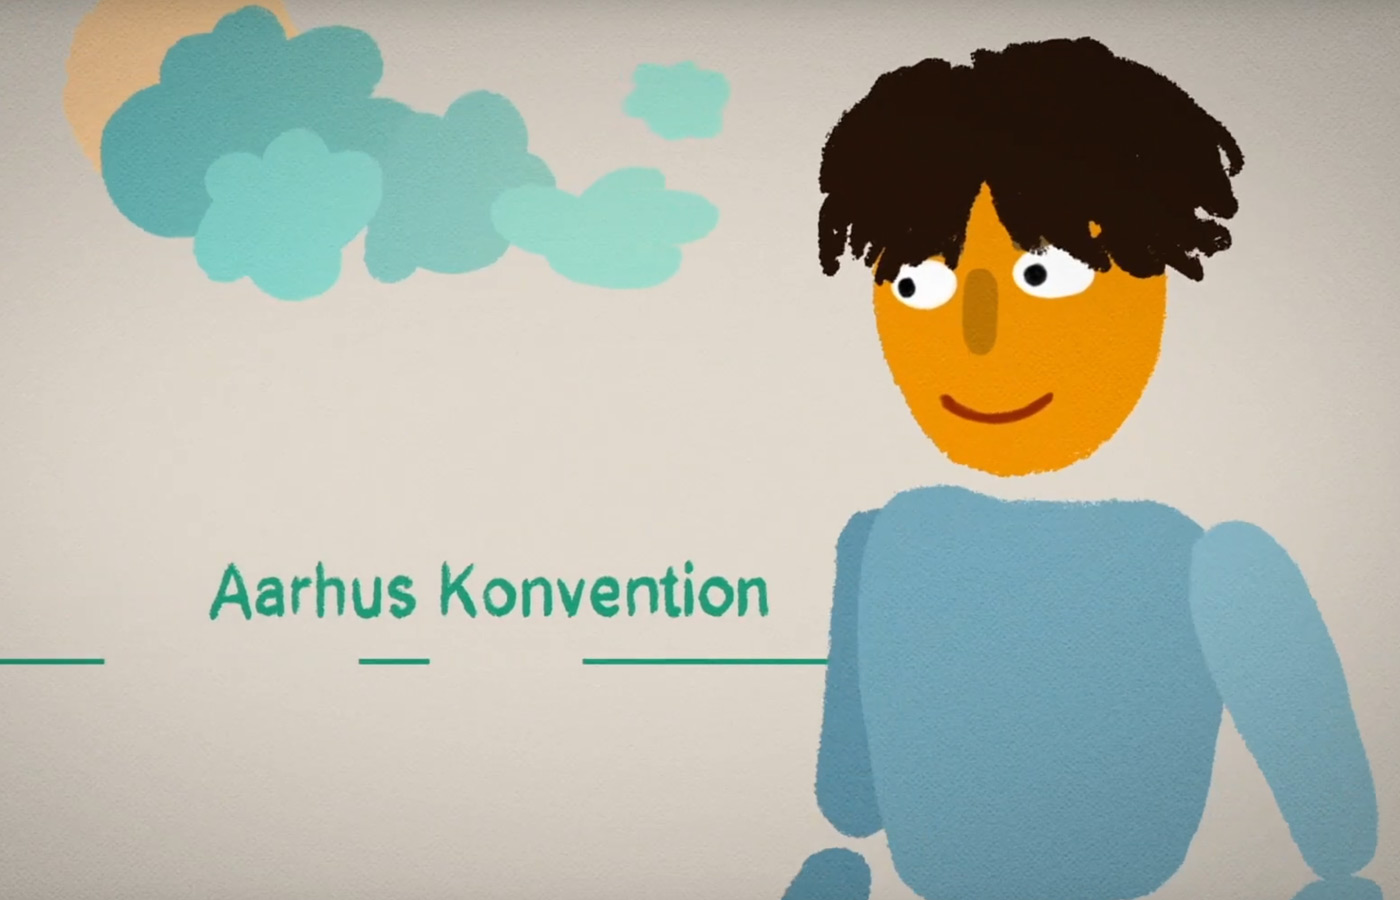 Aarhus-Konvention auf EU-Ebene - Einführung